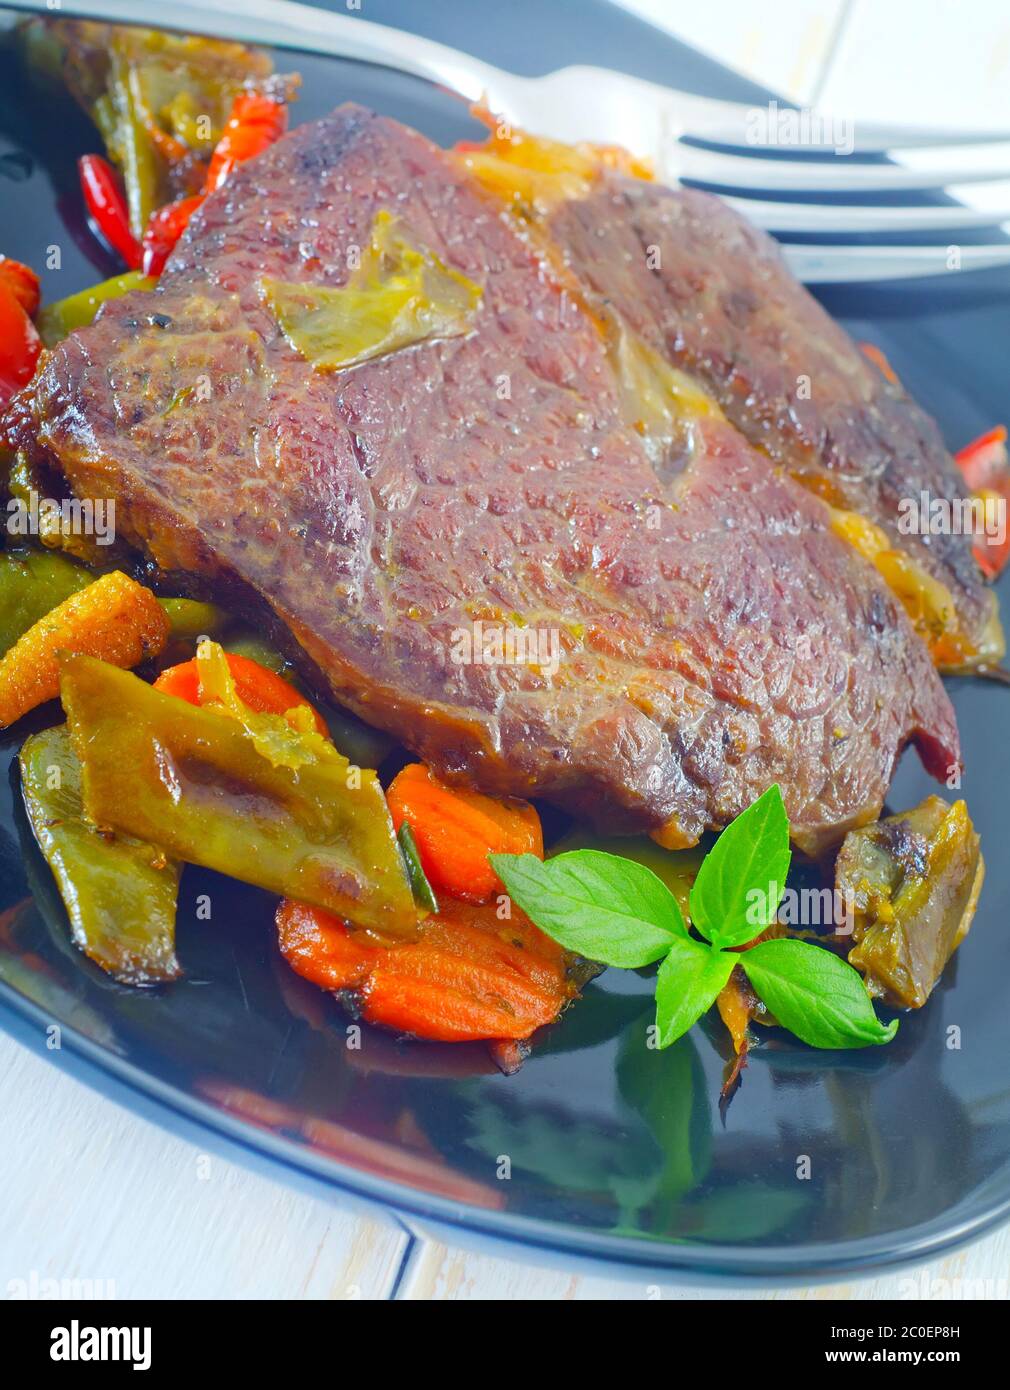 Carni cotte al forno con verdure Foto Stock